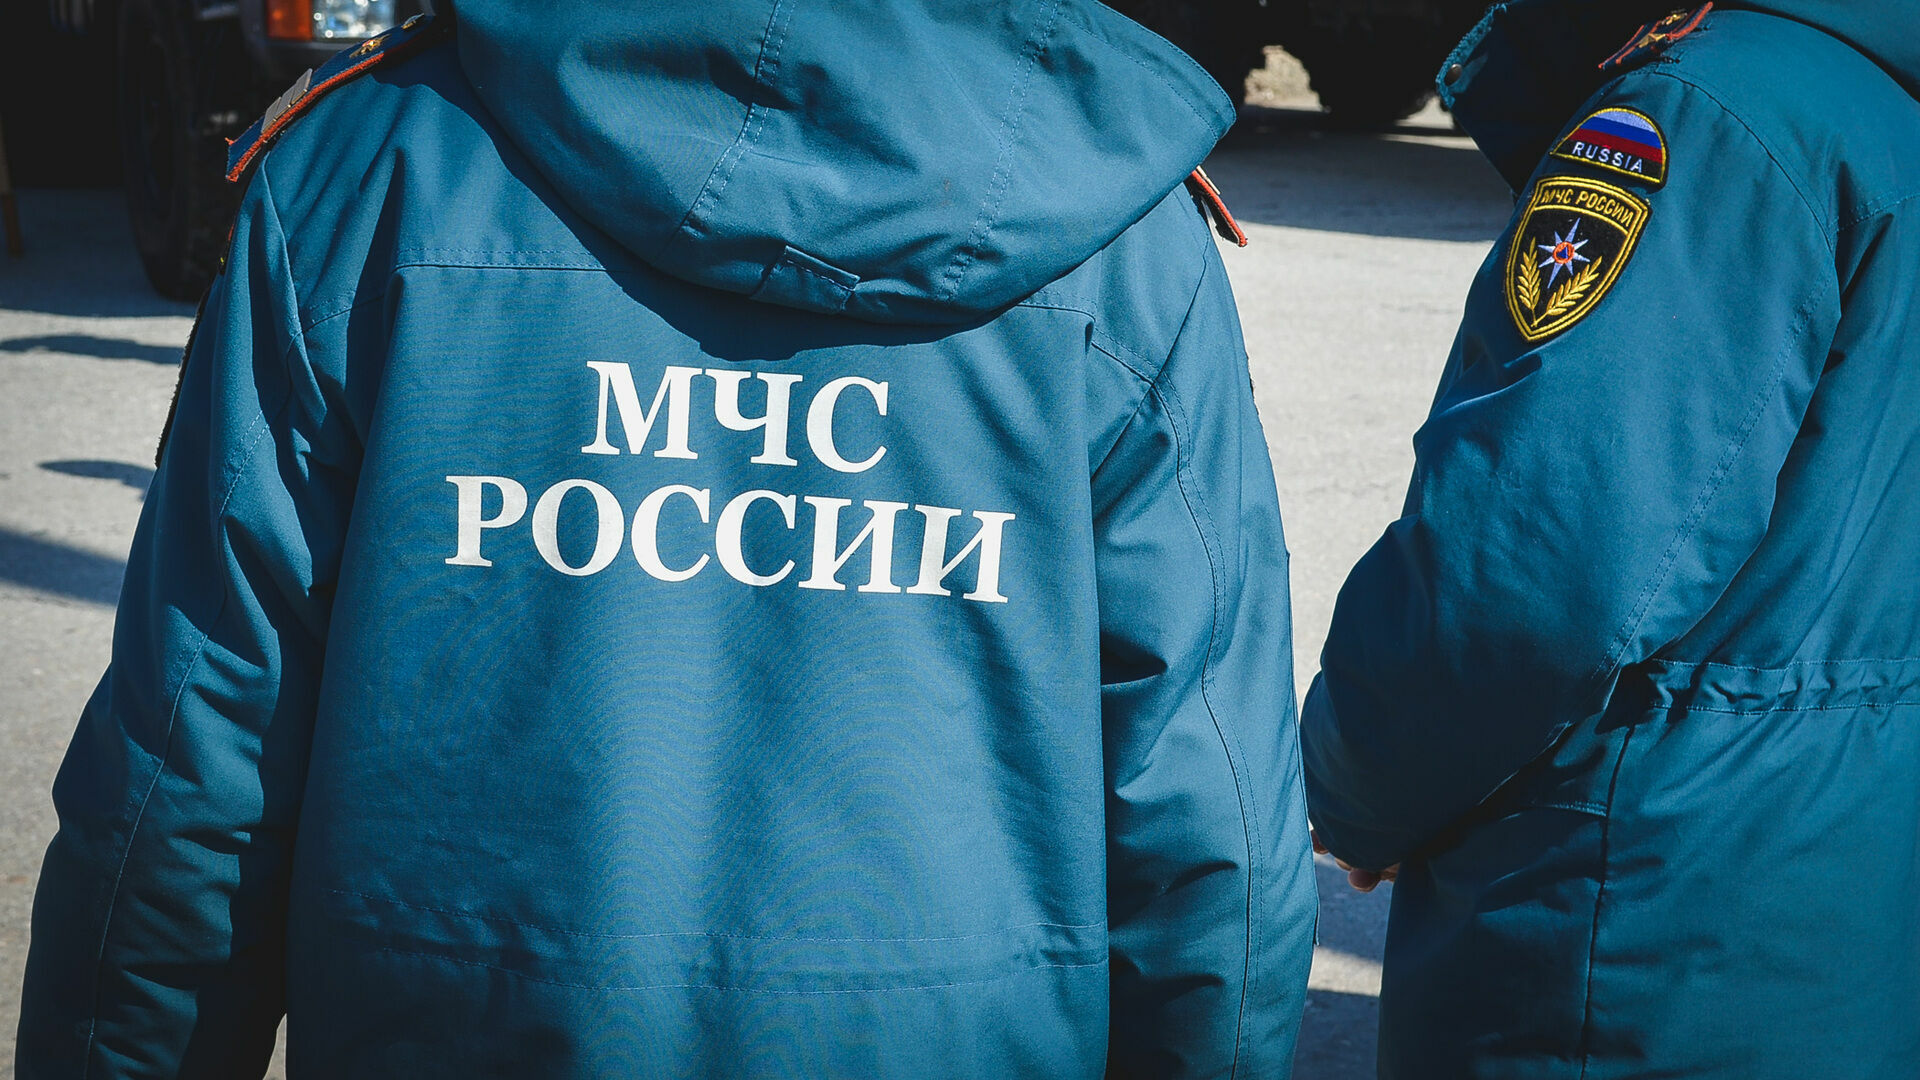 Общежитие на юго-востоке Москвы эвакуировано после звонка о минировании